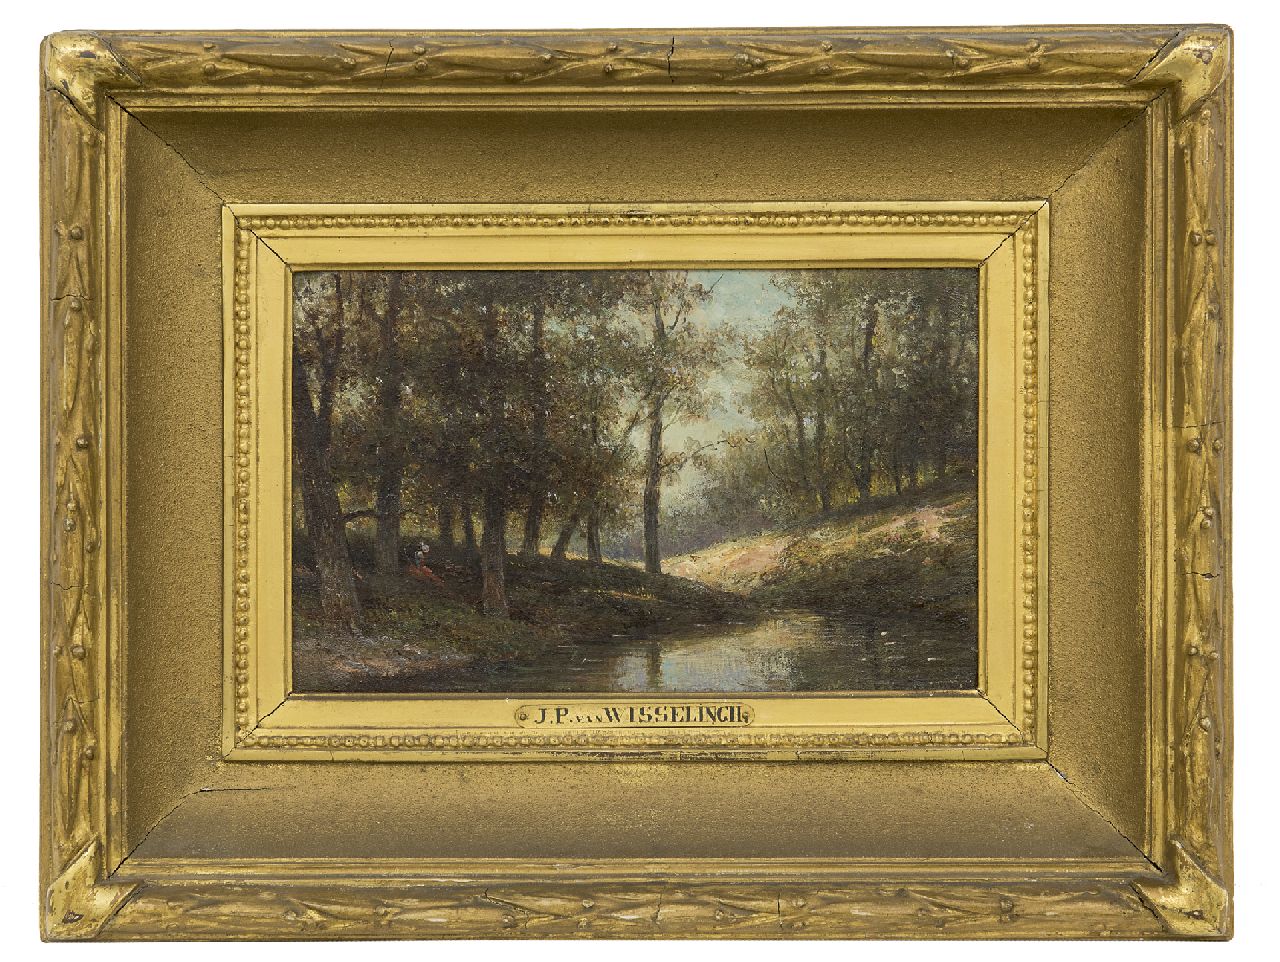 Wisselingh J.P. van | Johannes Pieter van Wisselingh | Schilderijen te koop aangeboden | Bij de bosbeek, olieverf op paneel 14,5 x 23,4 cm